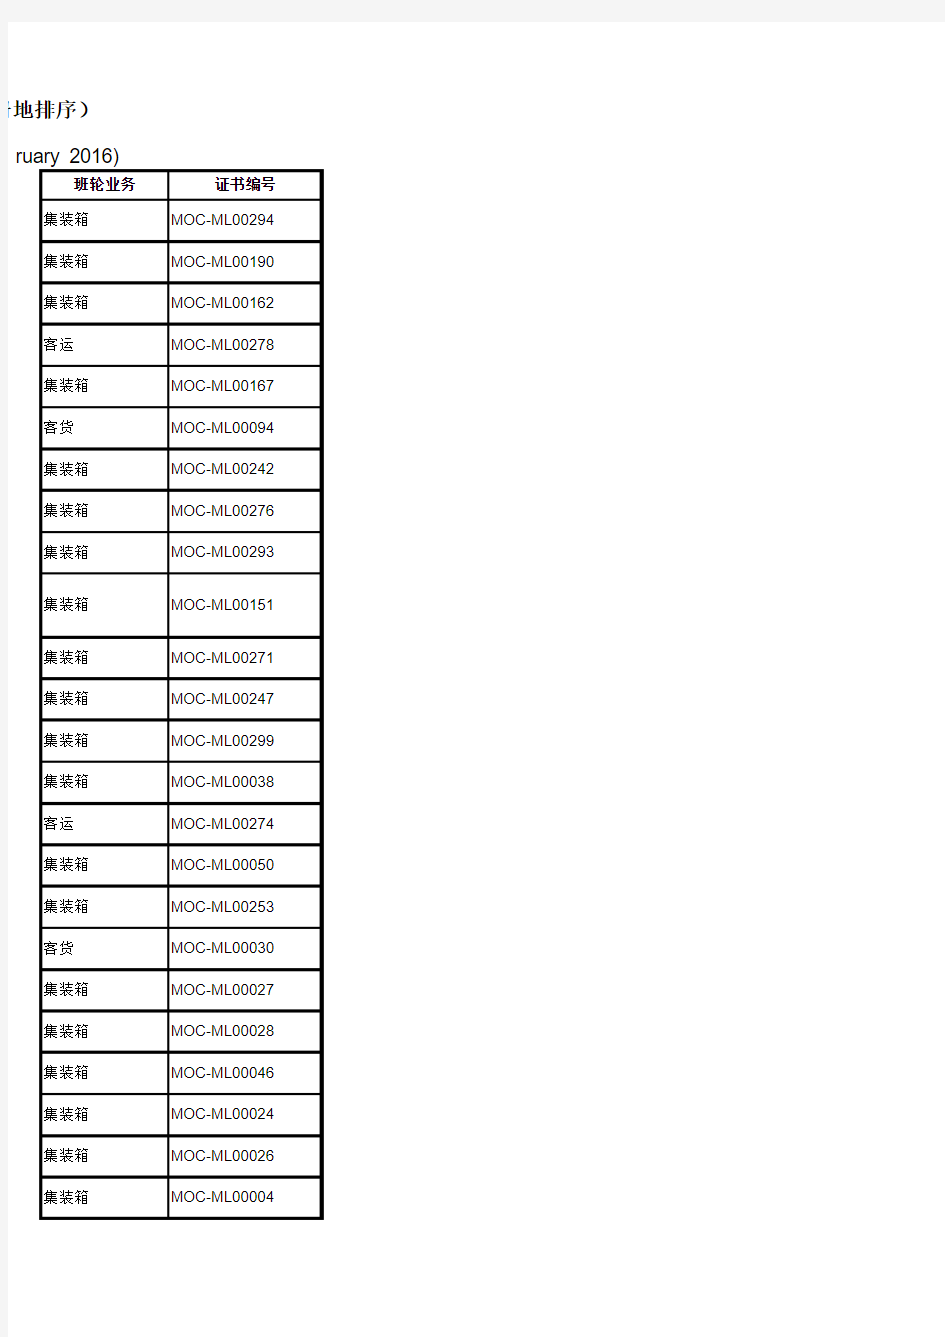 国际班轮运输业务经营者名单(截止到2016年2月29日)xls